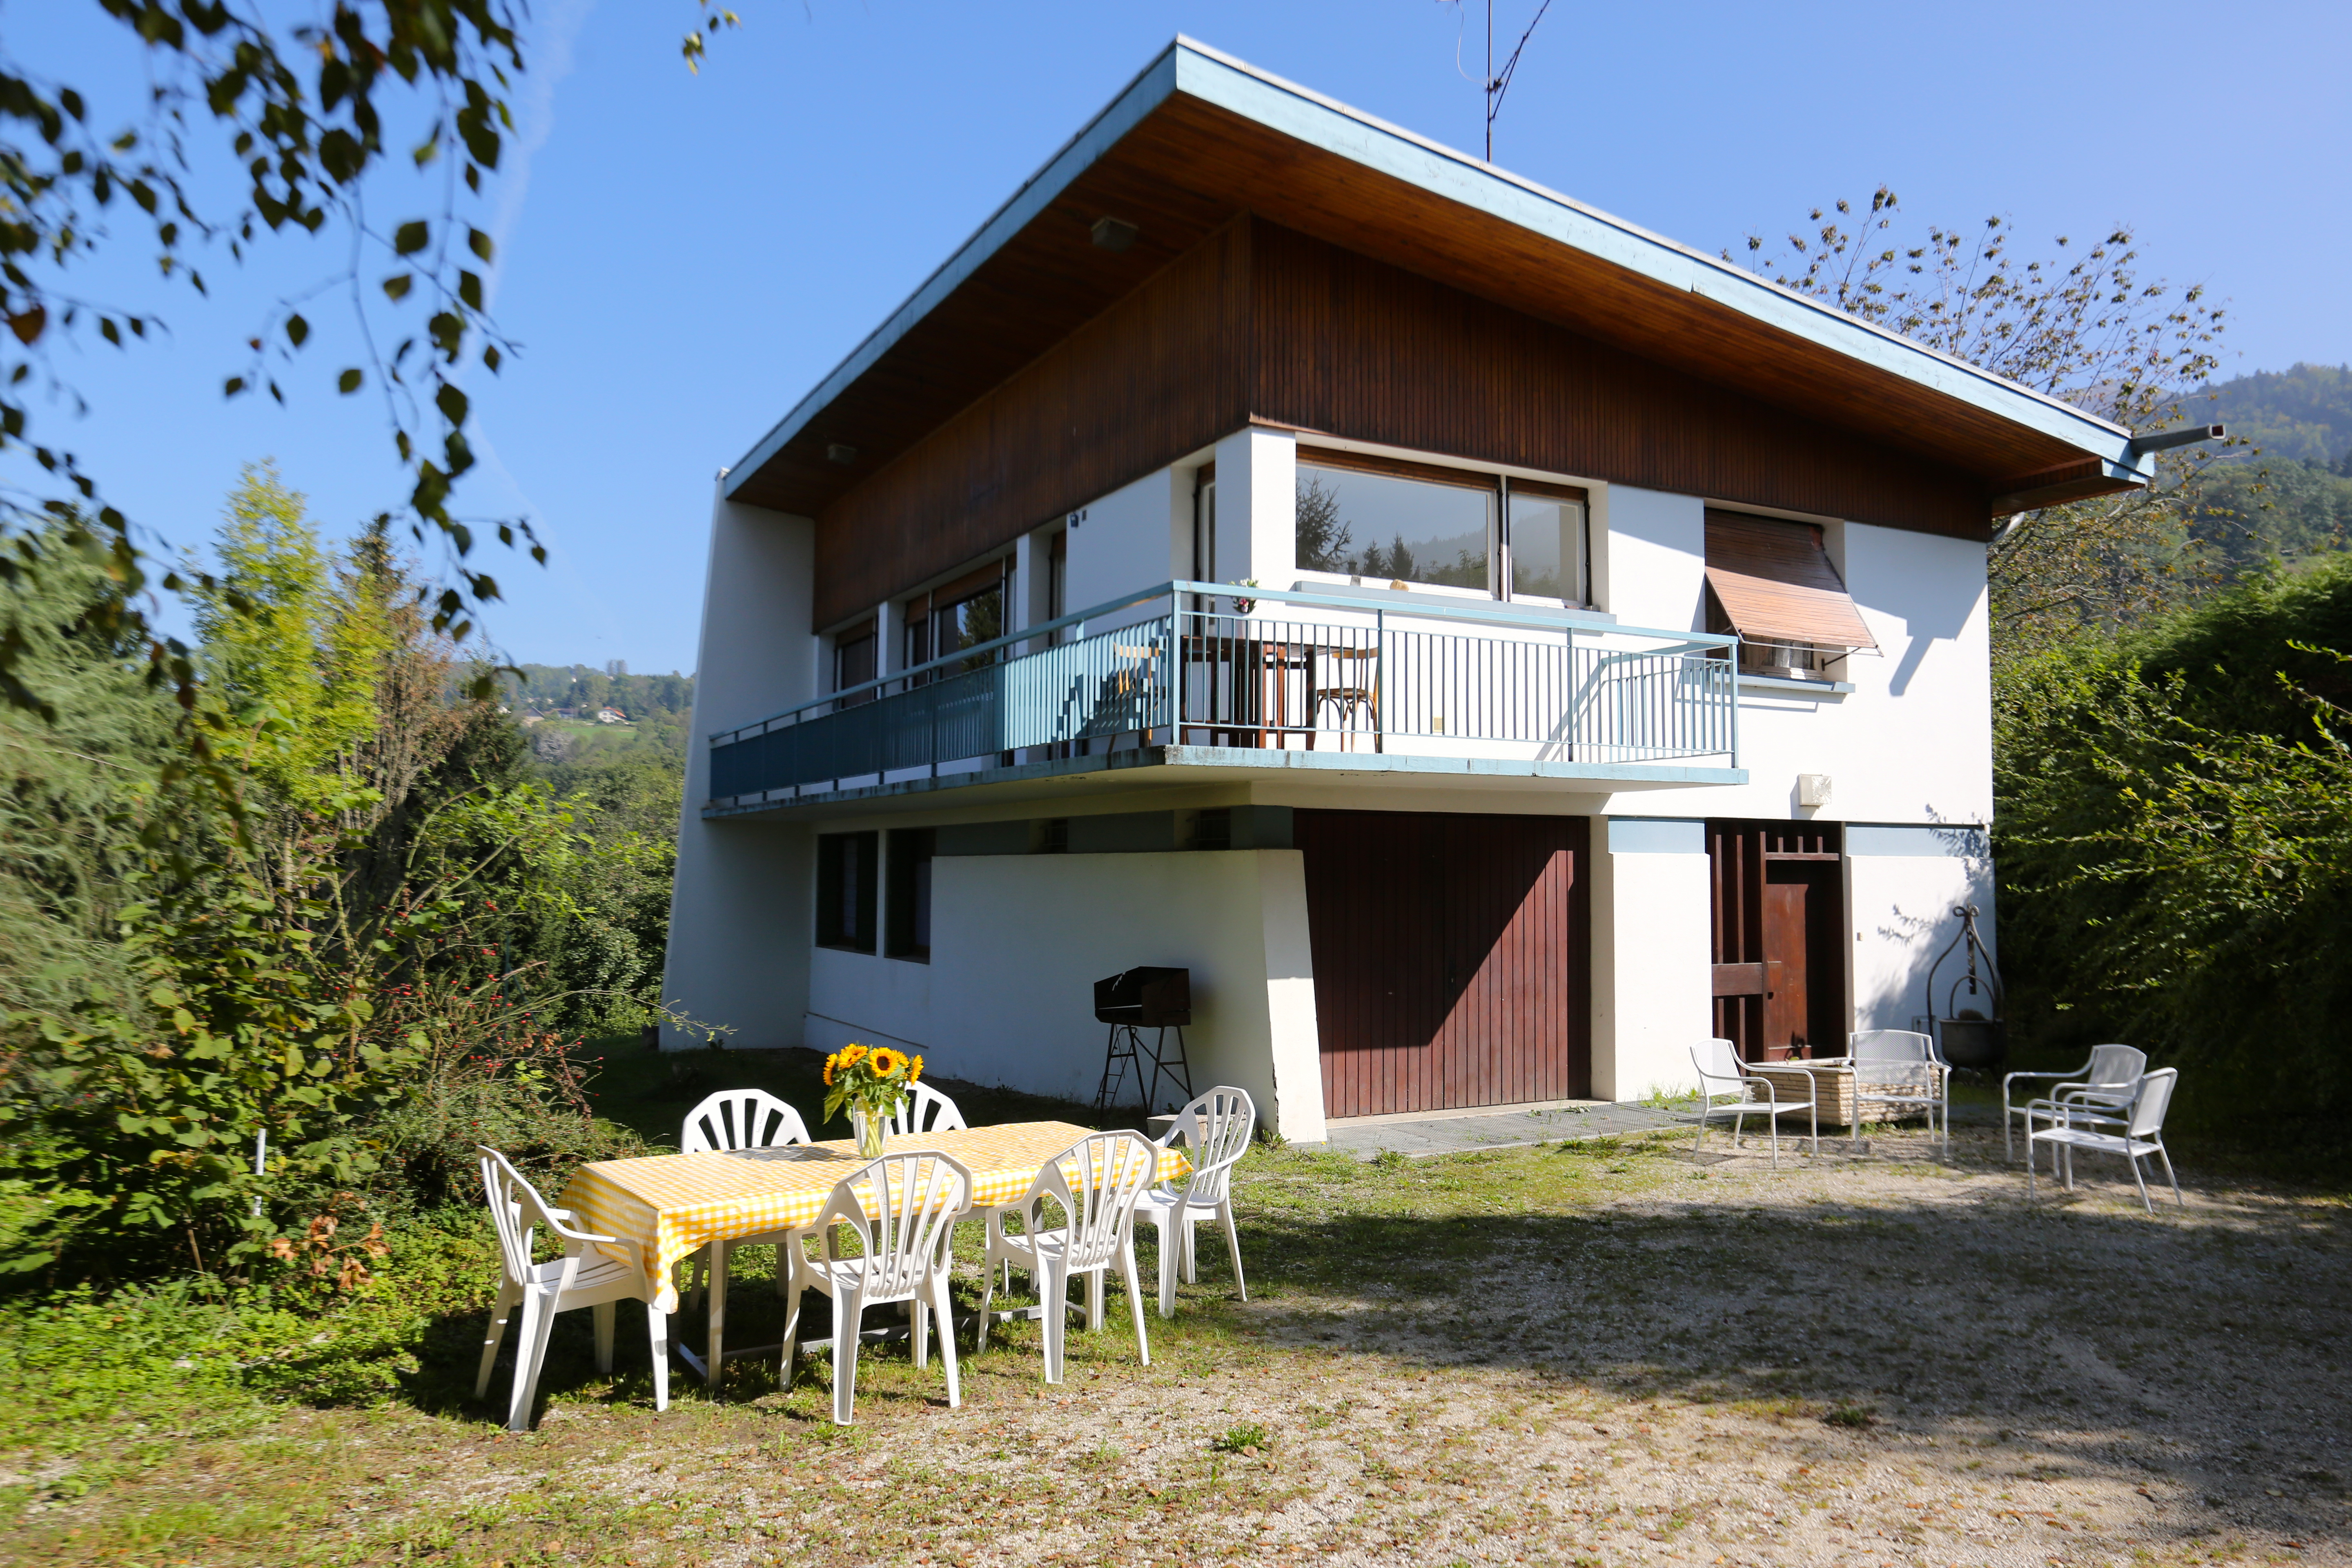 Bienvenue au Gite "Les Bonnets Marins" - Maisons à louer à Saint-Martin-d' Uriage, Rhône-Alpes, France - Airbnb